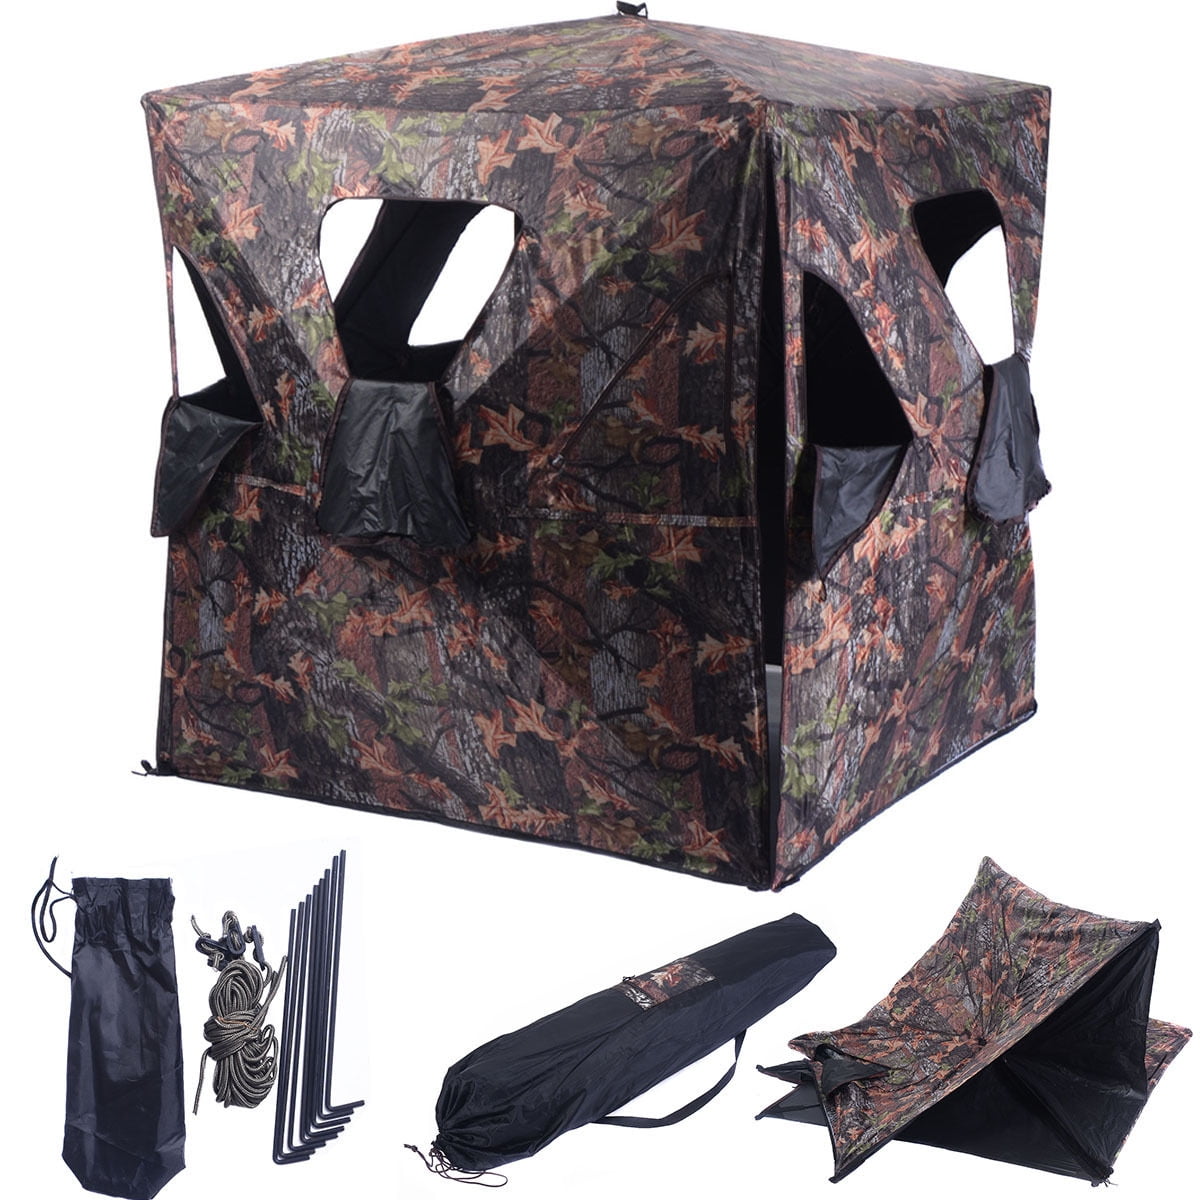 Details about   Portable Ground Hunting Blind Deer Turkey 4-Panel Steel Frame Backpack Carry Bag